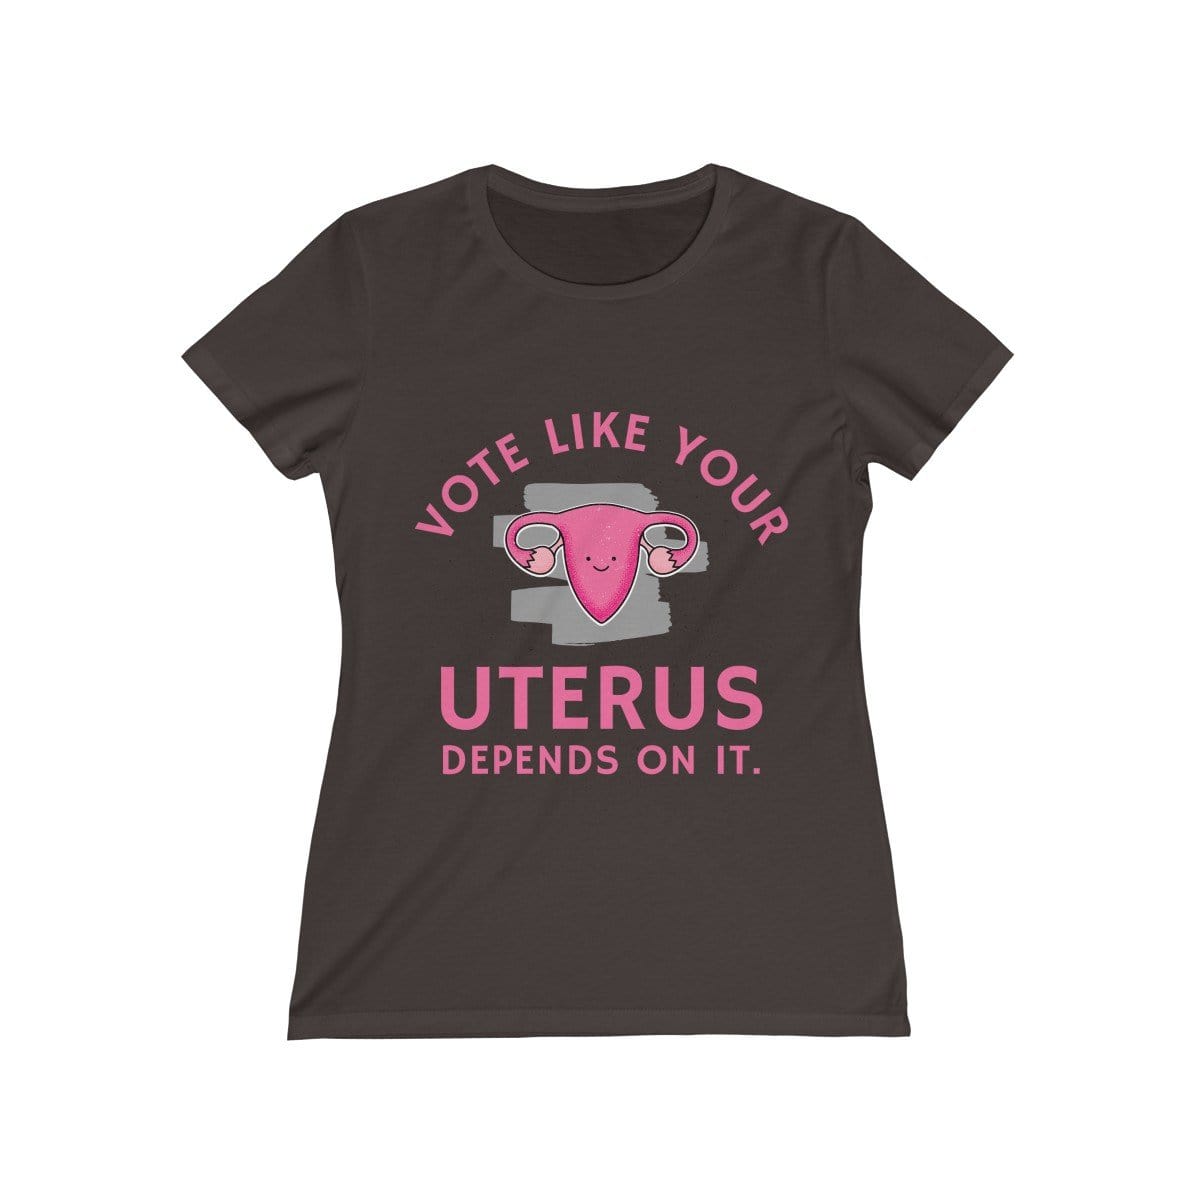 "Vote Like Your Uterus Depends On It" Women's Tee - True Blue Gear